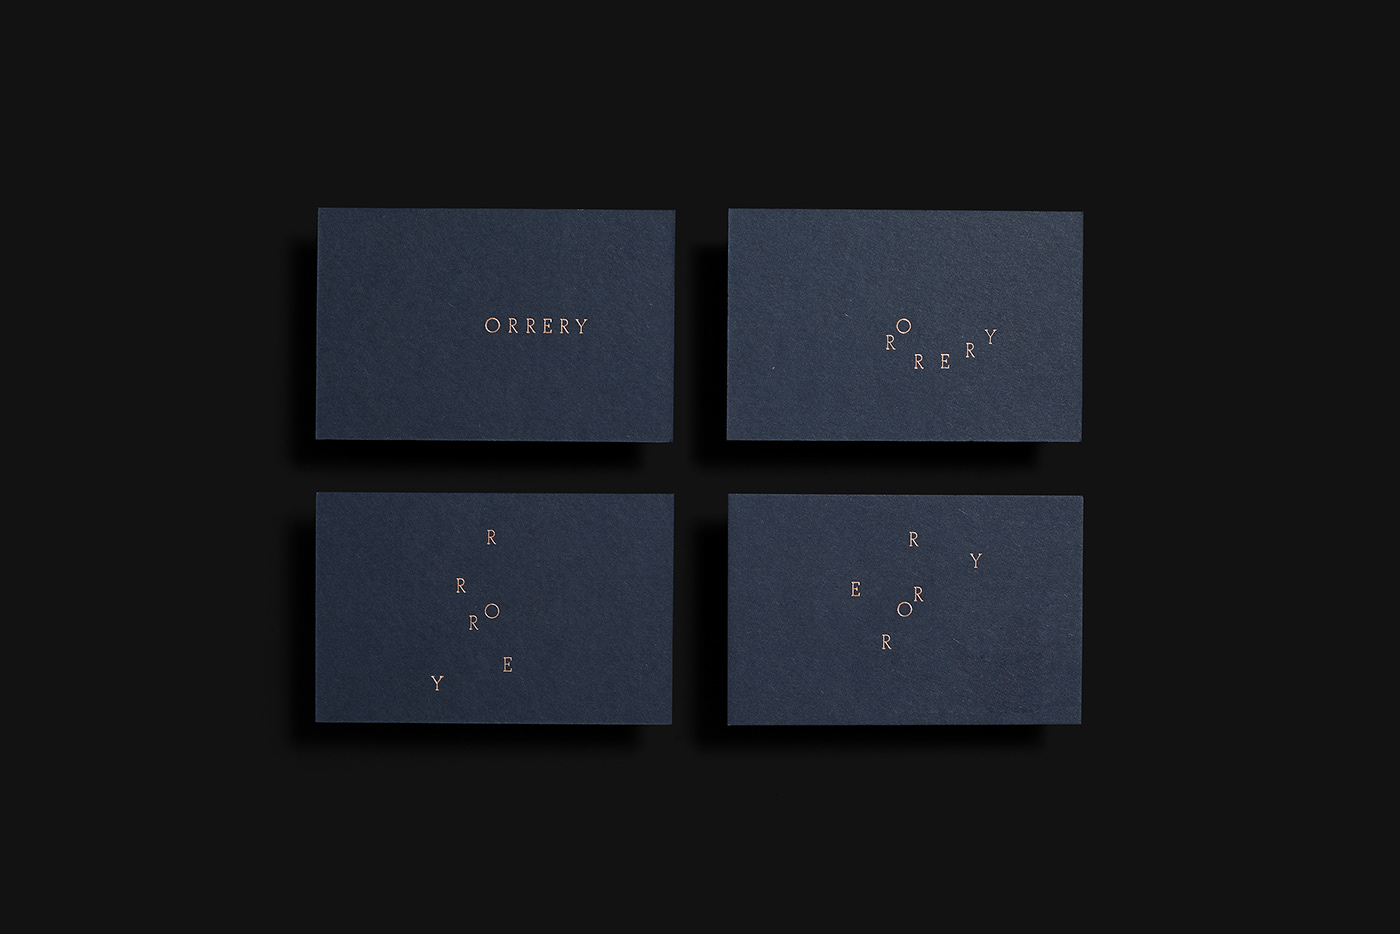 Business card design idea #416: Orrery